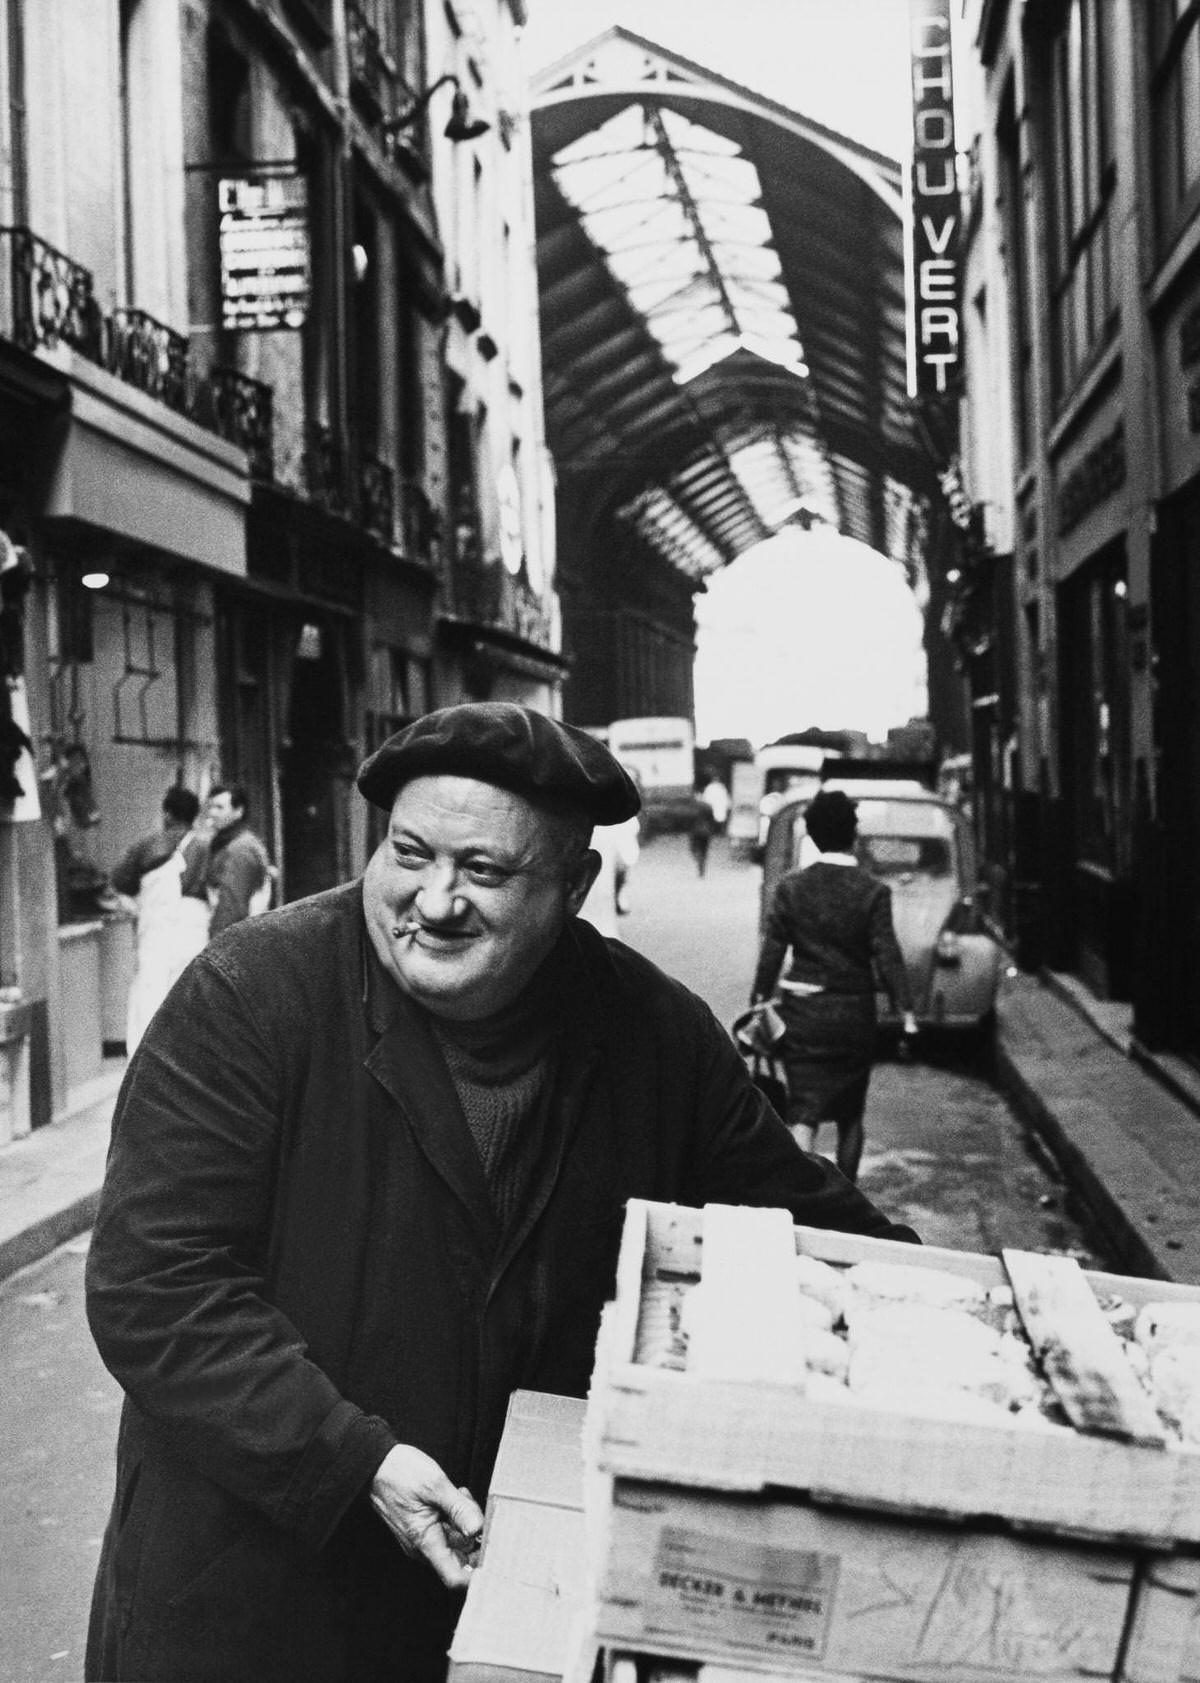 A Wholesaler Smiling, Les Halles, 1960s